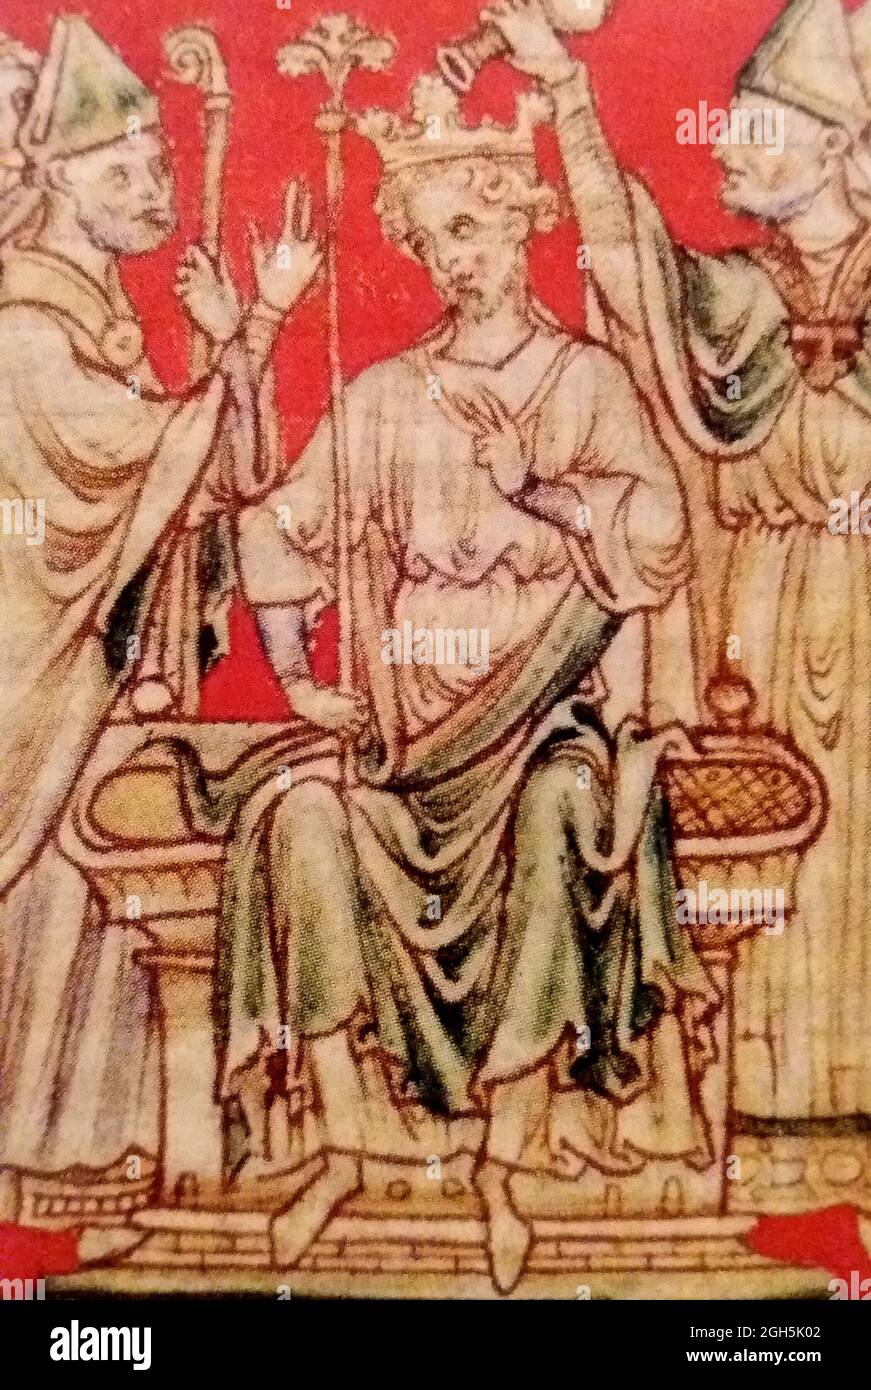 Un ritratto di Riccardo i, o Riccardo il Lionheart, che fu Re d'Inghilterra dal 1189 al 1199 Foto Stock